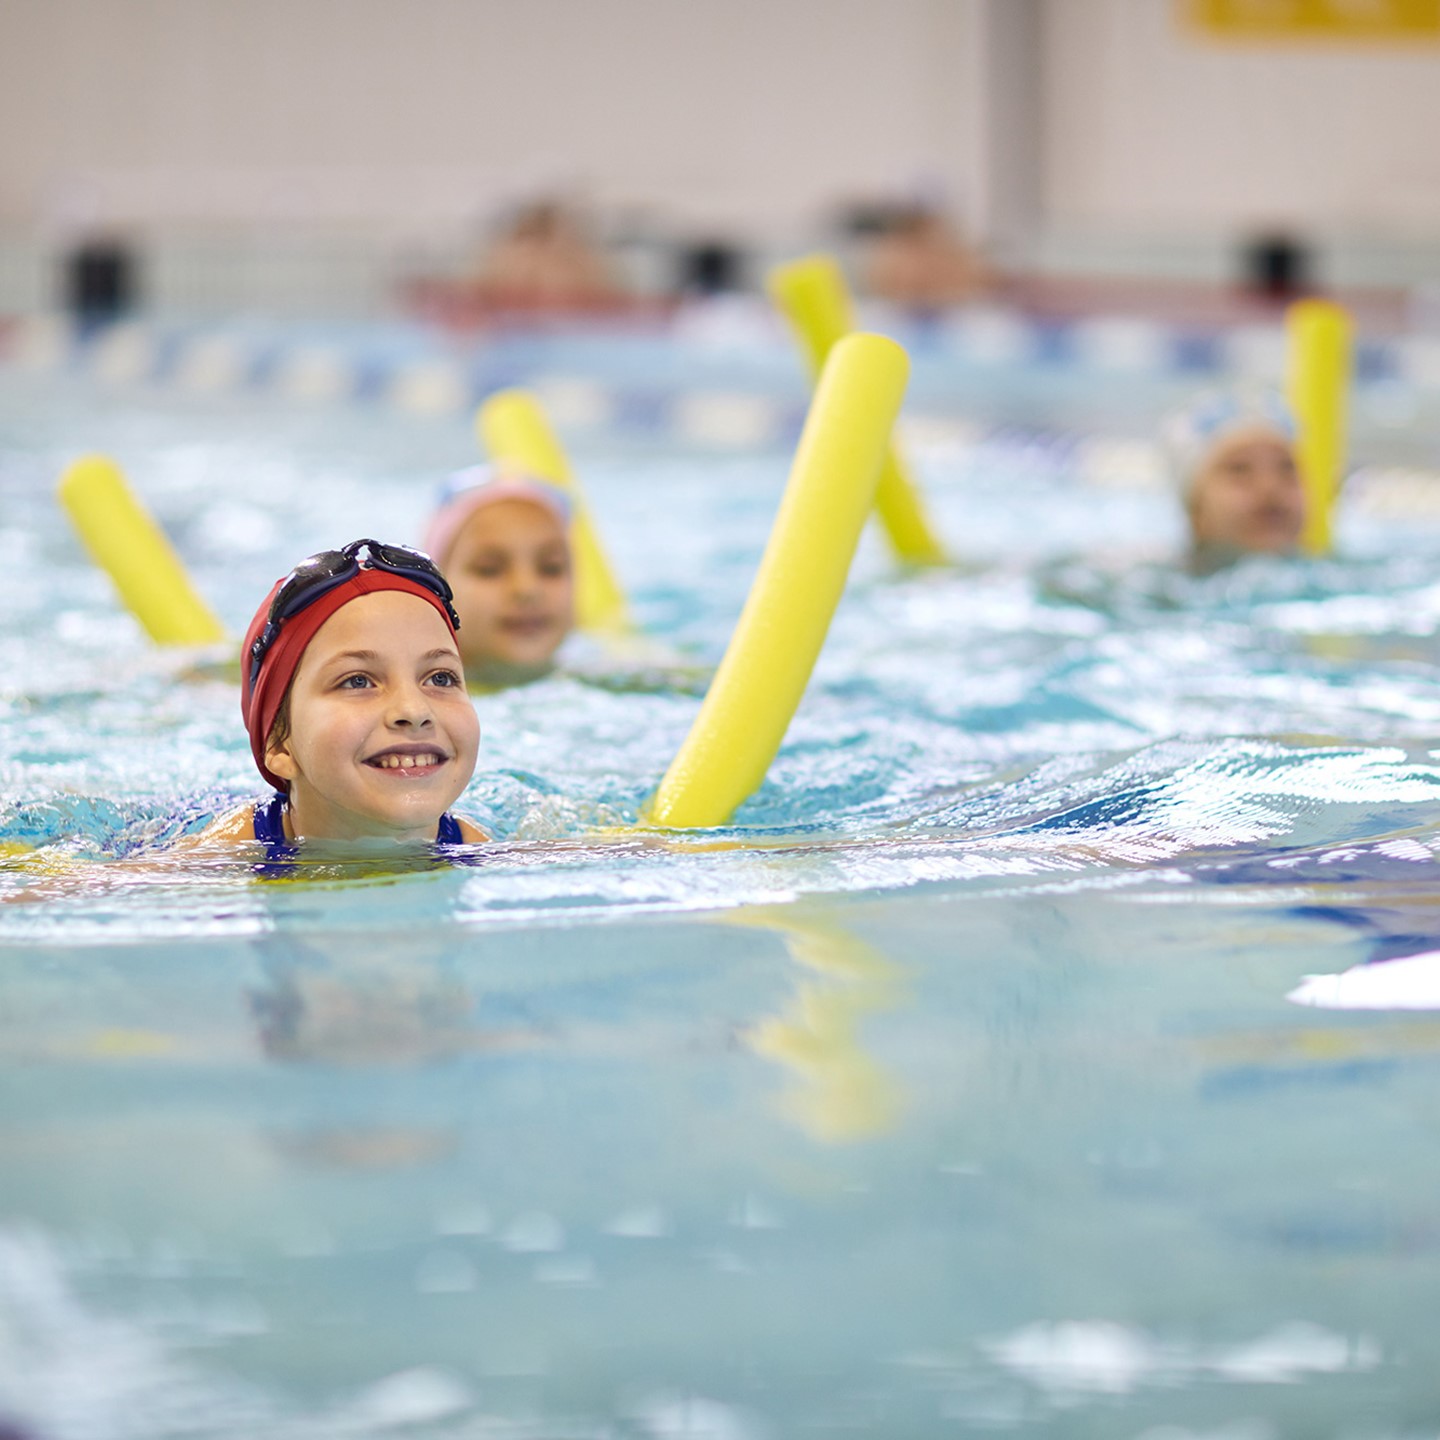 Children having swimming lesson on pool float